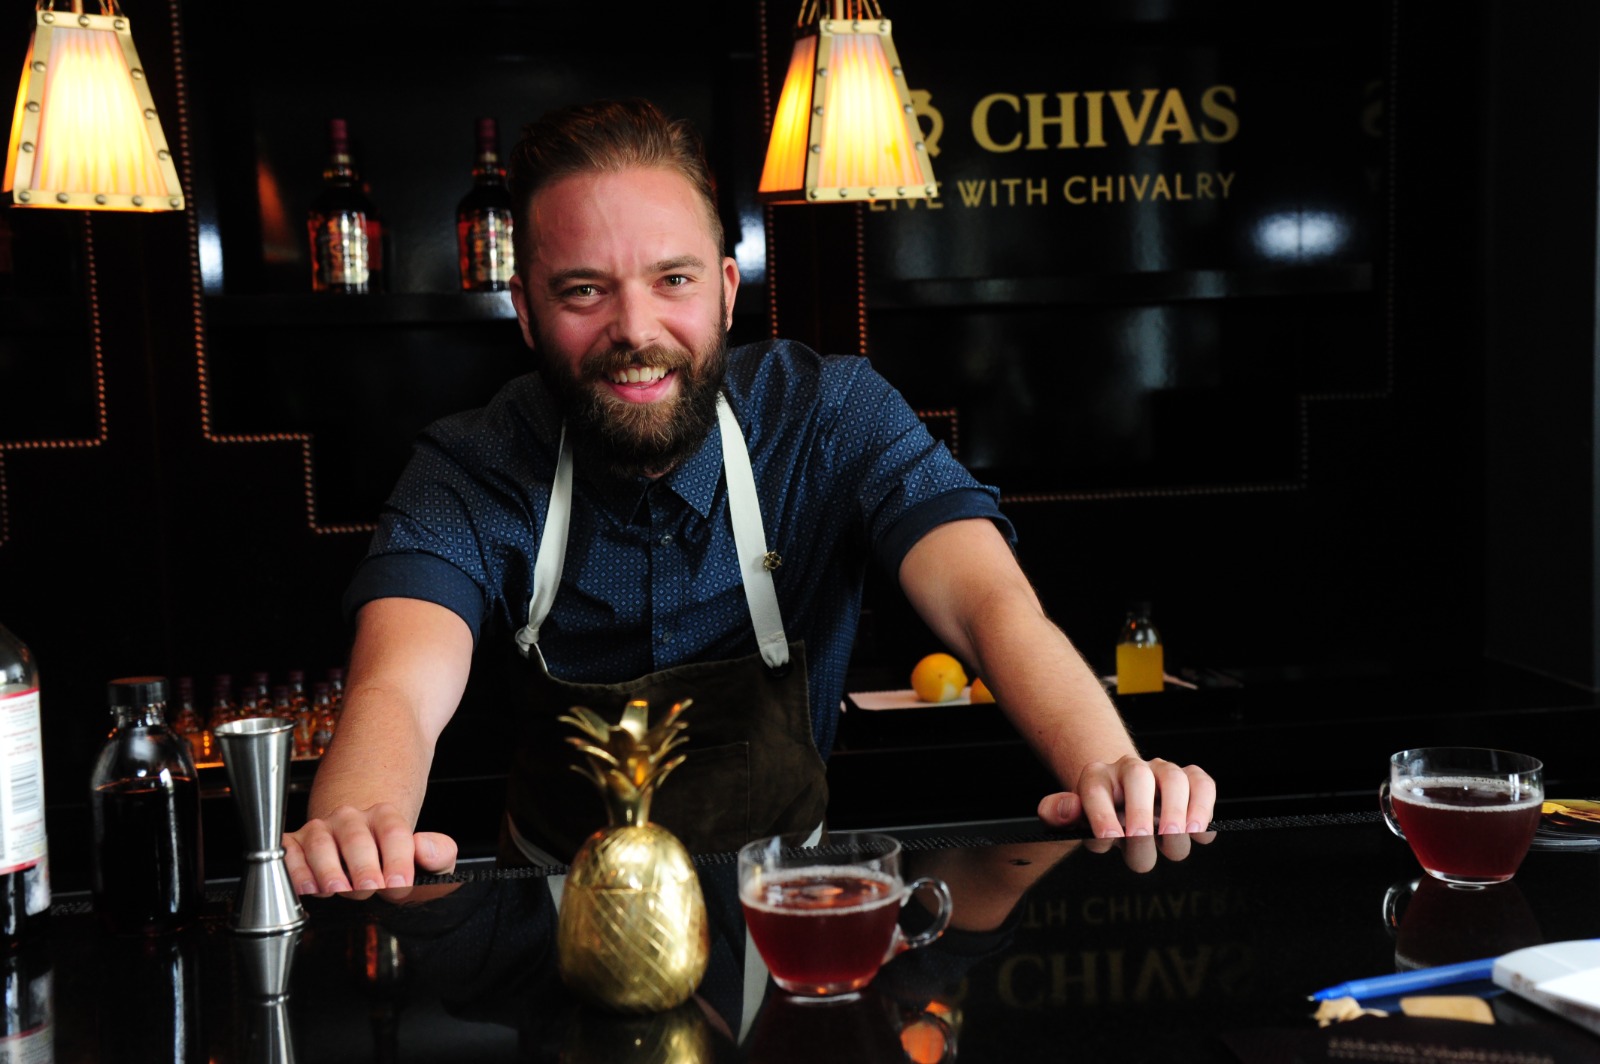 chivas-bartenders-chapter-intermezzo-bar-vienna-chivas-regal-whisky